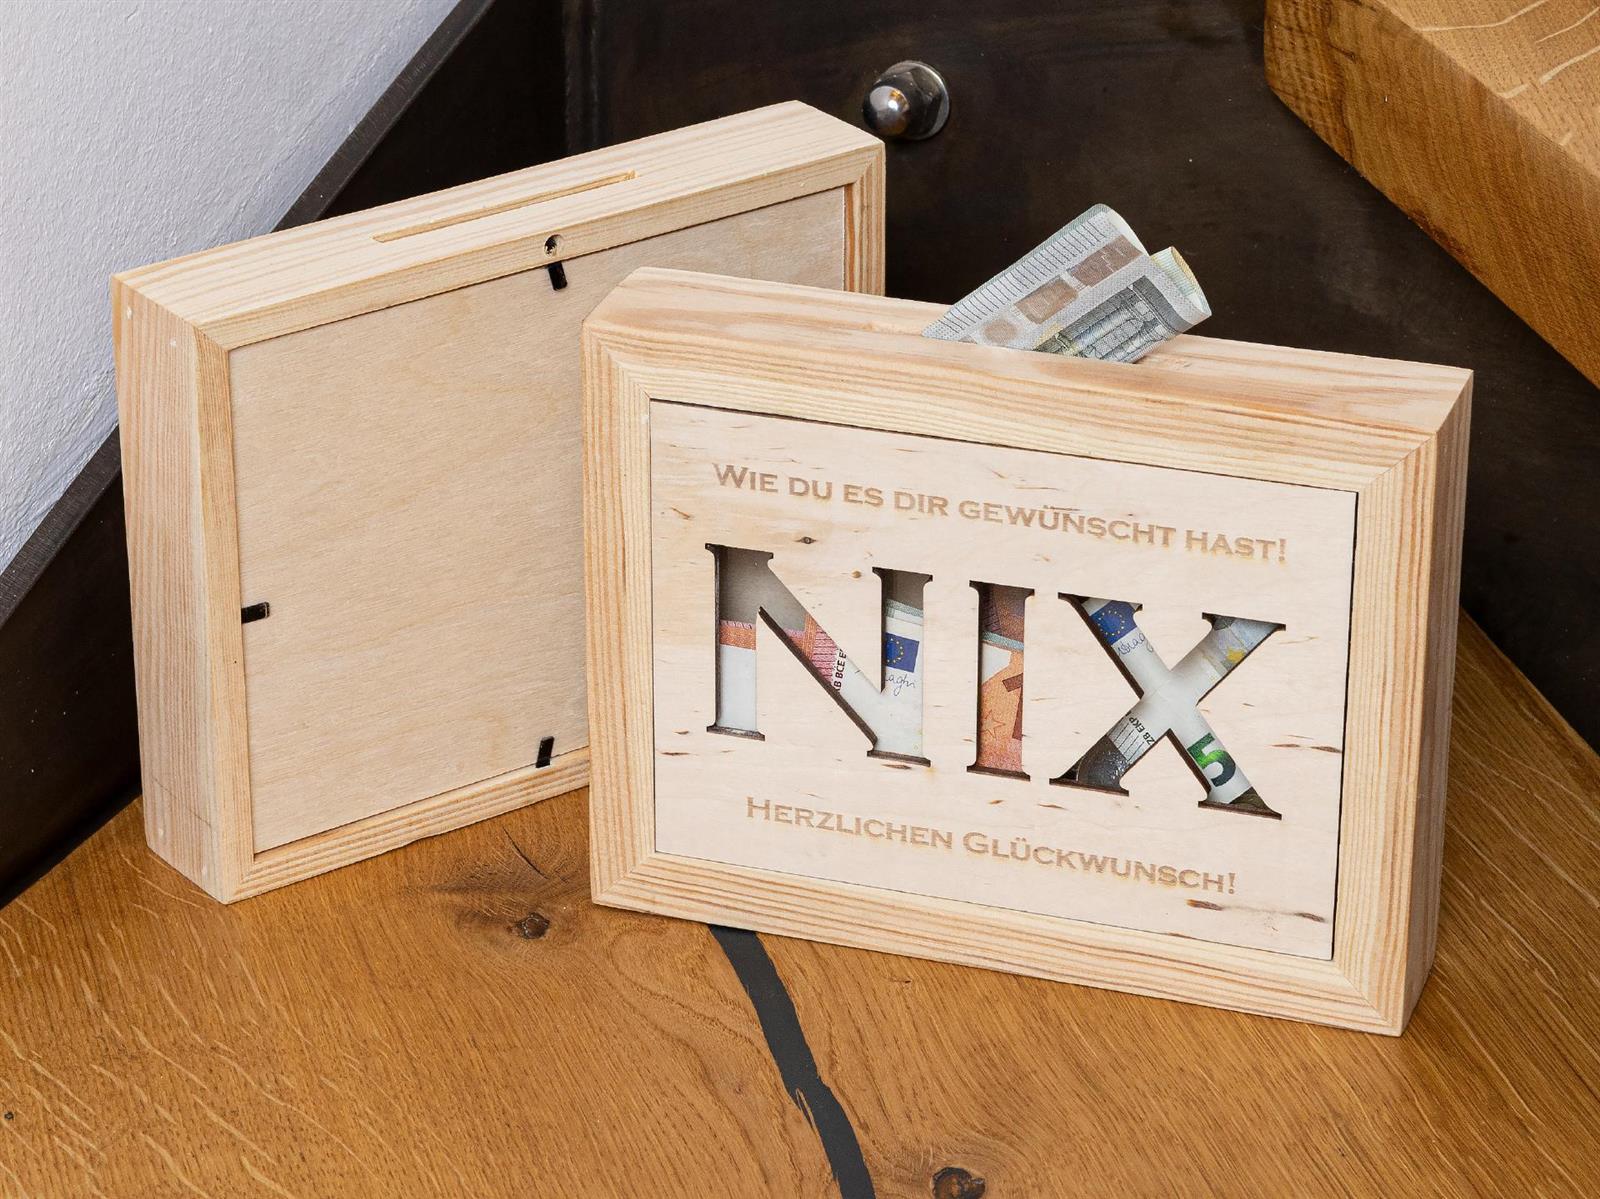 Sparkasse fuer die wo sich NIX wuenschen Holz Spardose Bilderrahmen mit Glas Einsatz und Muenzschlitz